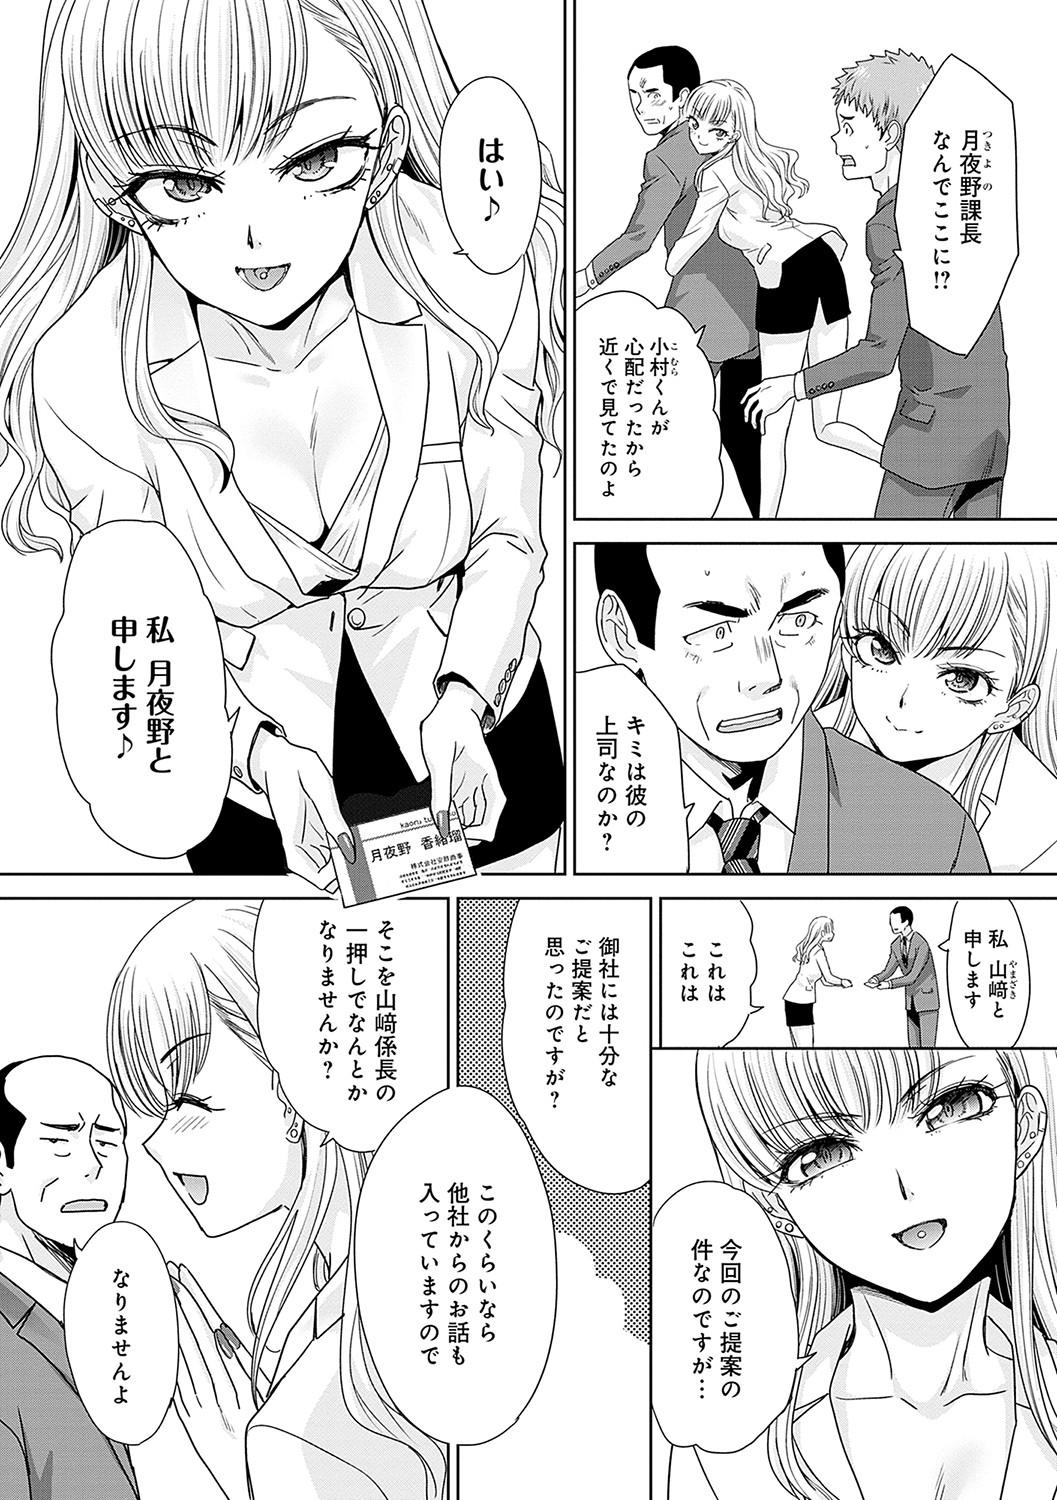 Penetration Tsukiyono Kachou wa Gal o Yamerarenai - Tsukiyono The manager can't quit a gal Trio - Page 5